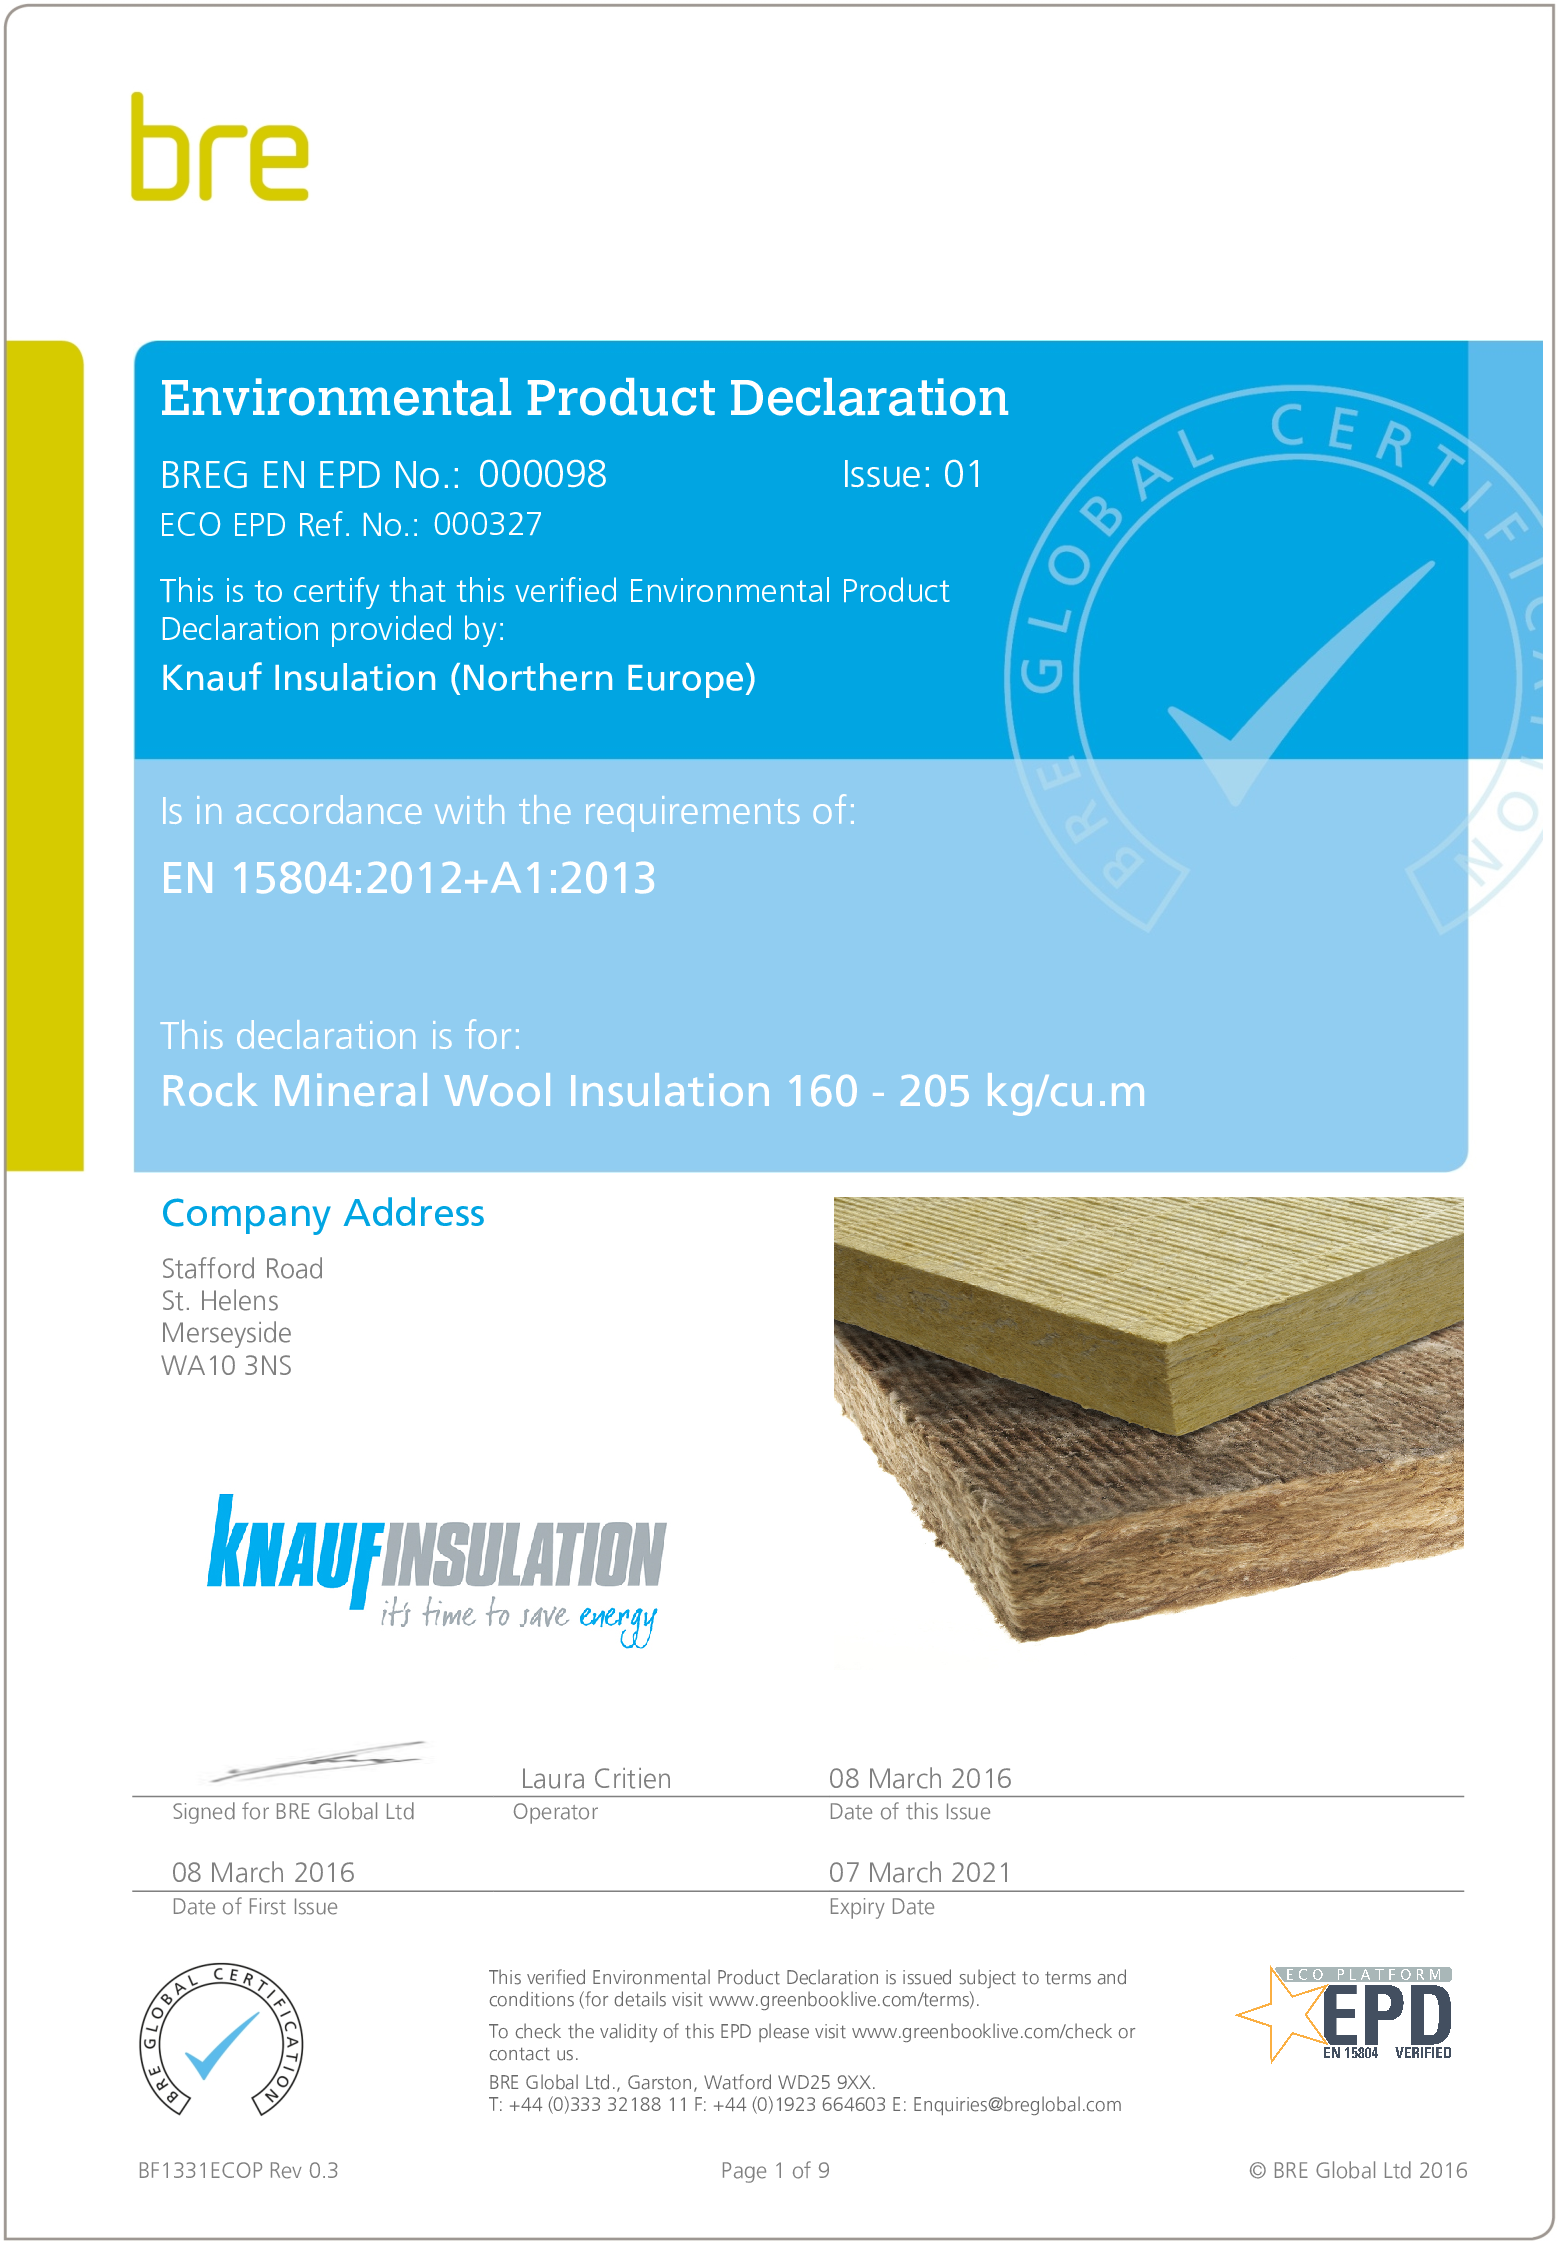 RMW Insulation 160 - 205 kg/cu.m